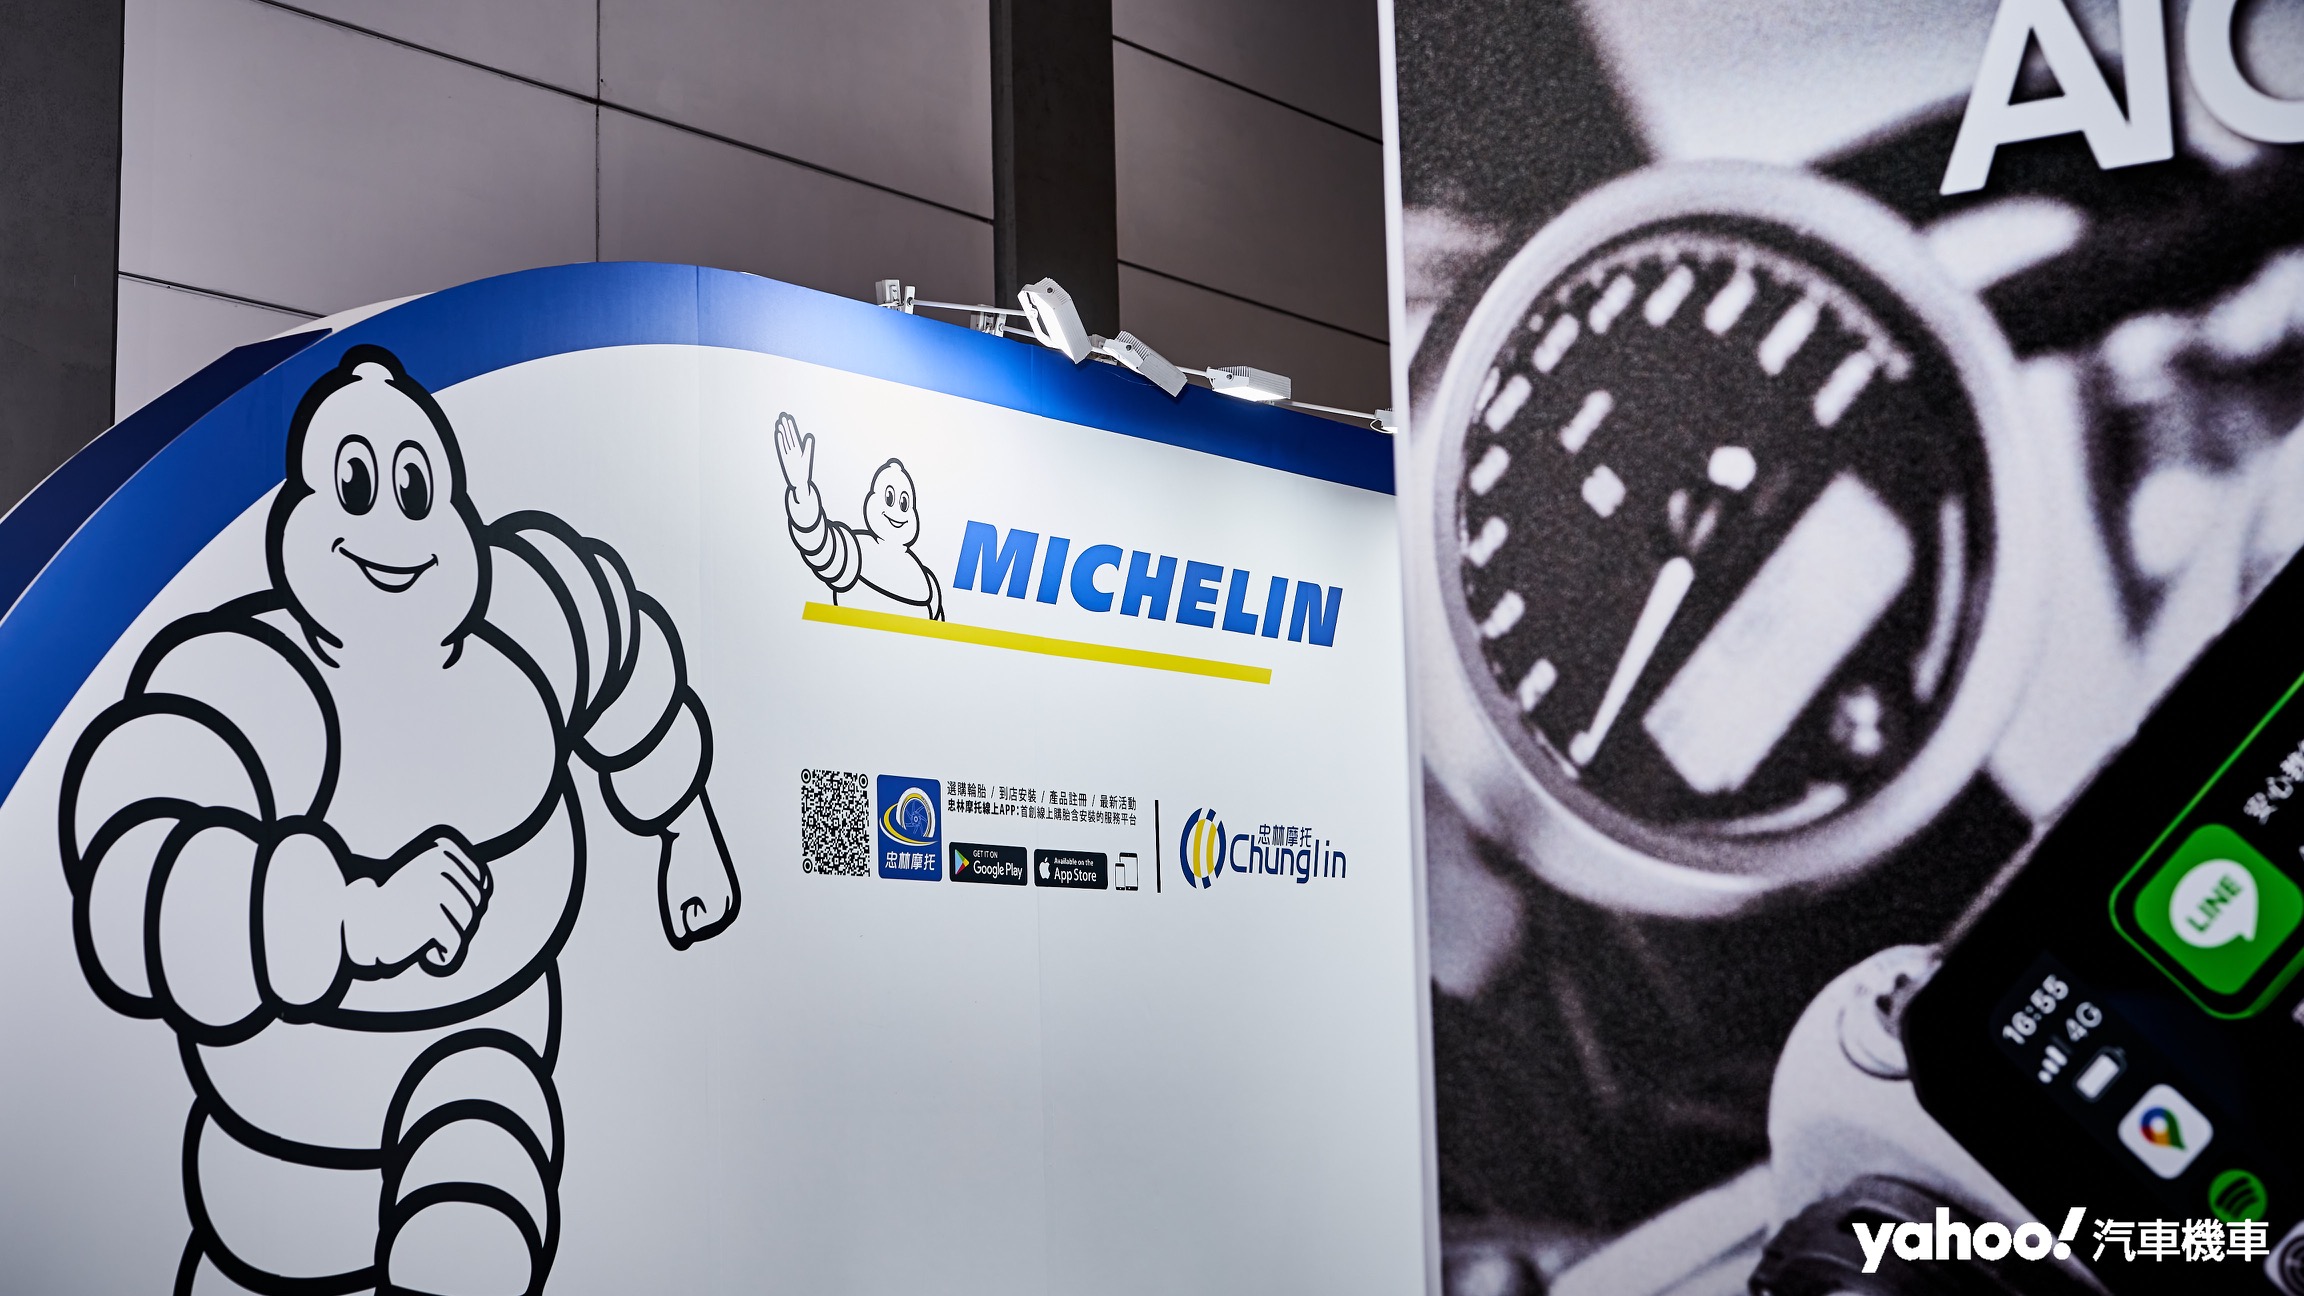 繼Mcihelin米其林二輪事業總代理之後，忠林摩托也宣布成為BOSCH博世在台灣的二輪零配件總經銷。